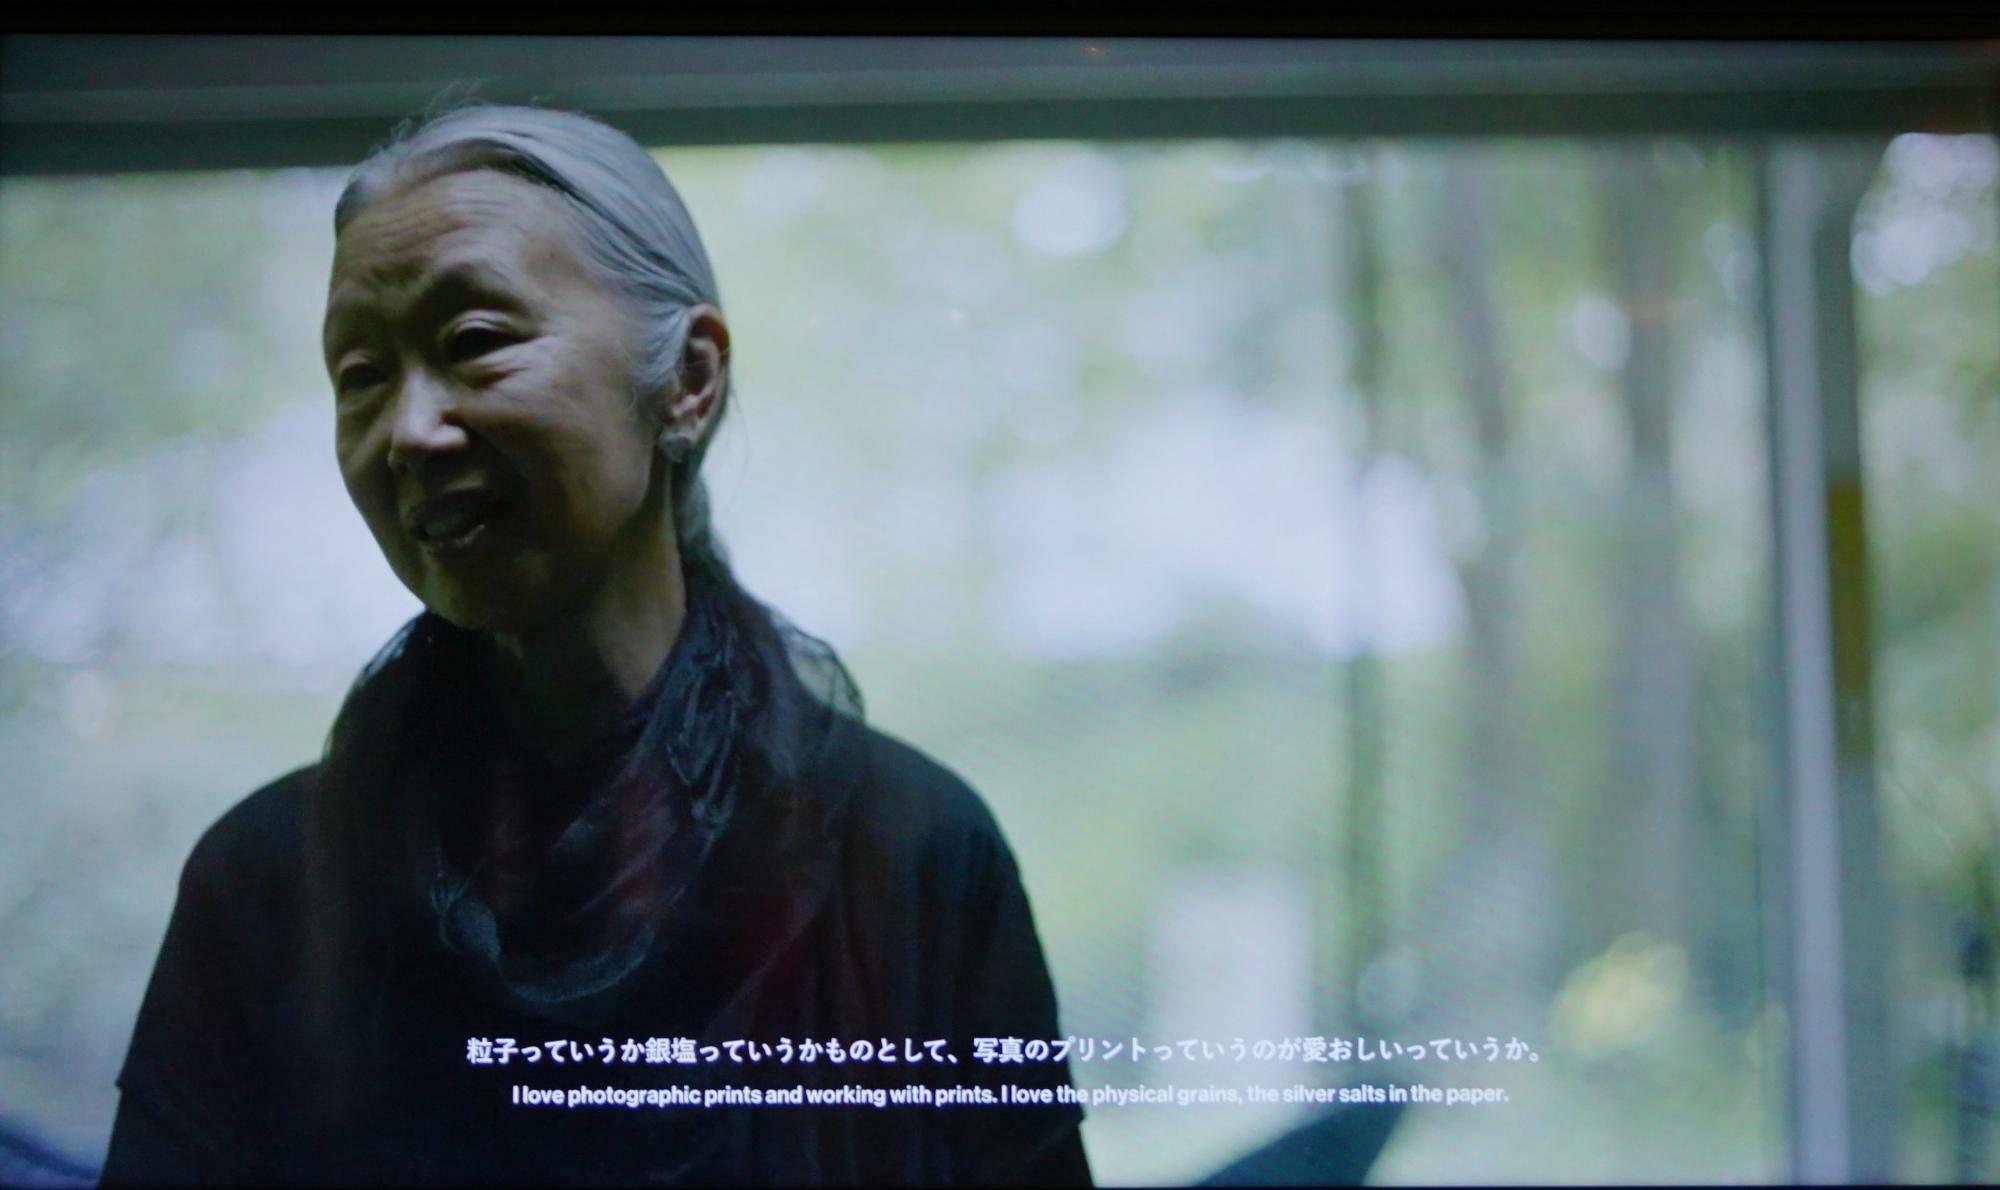 GYREのあちこちにあるモニターで、軽井沢にある高木さんの美しいご自宅で語る高木さんの貴重な映像が観られるので、ぜひご覧ください。